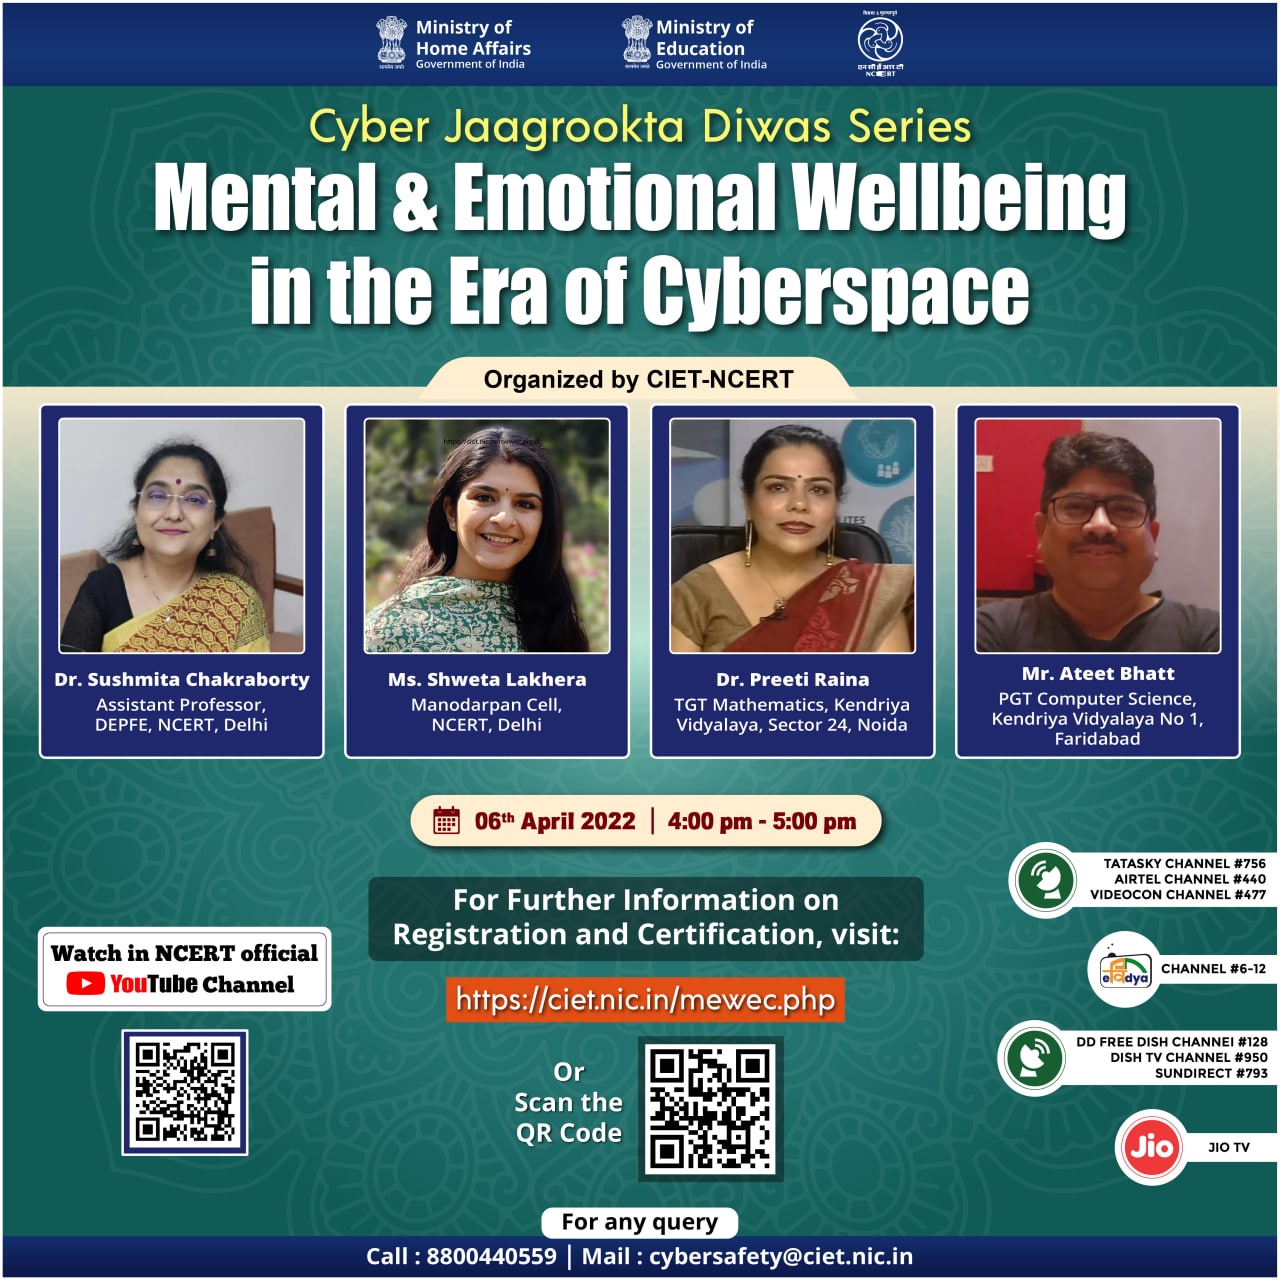 Cyber Jaagrookta Diwas Series : Mental and Emotional Wellbeing in the Era of Cyberspace Image